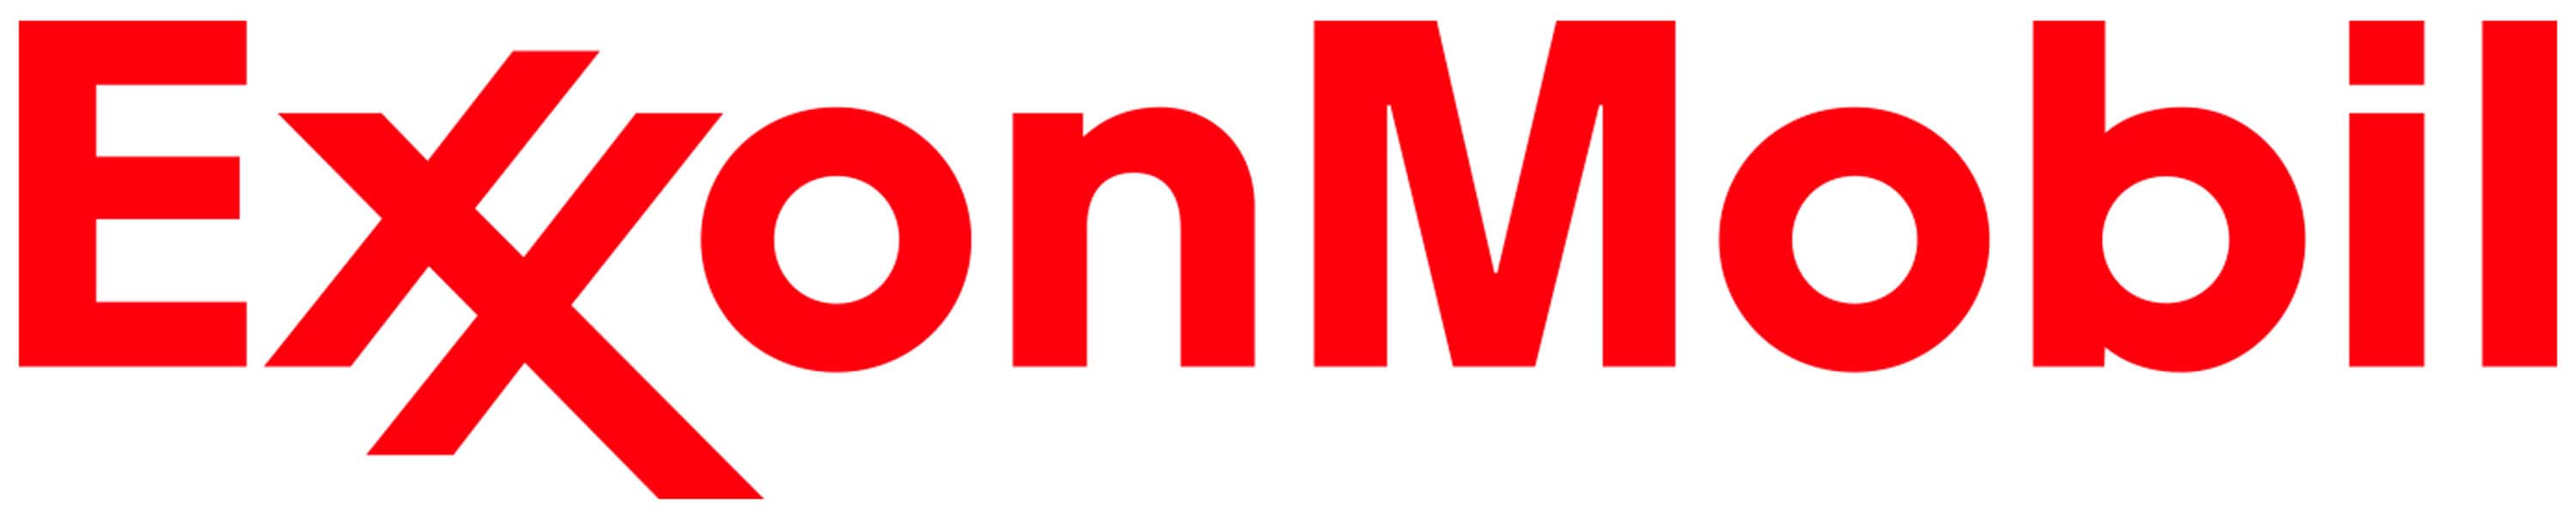 Logotipo da Exxon Mobil